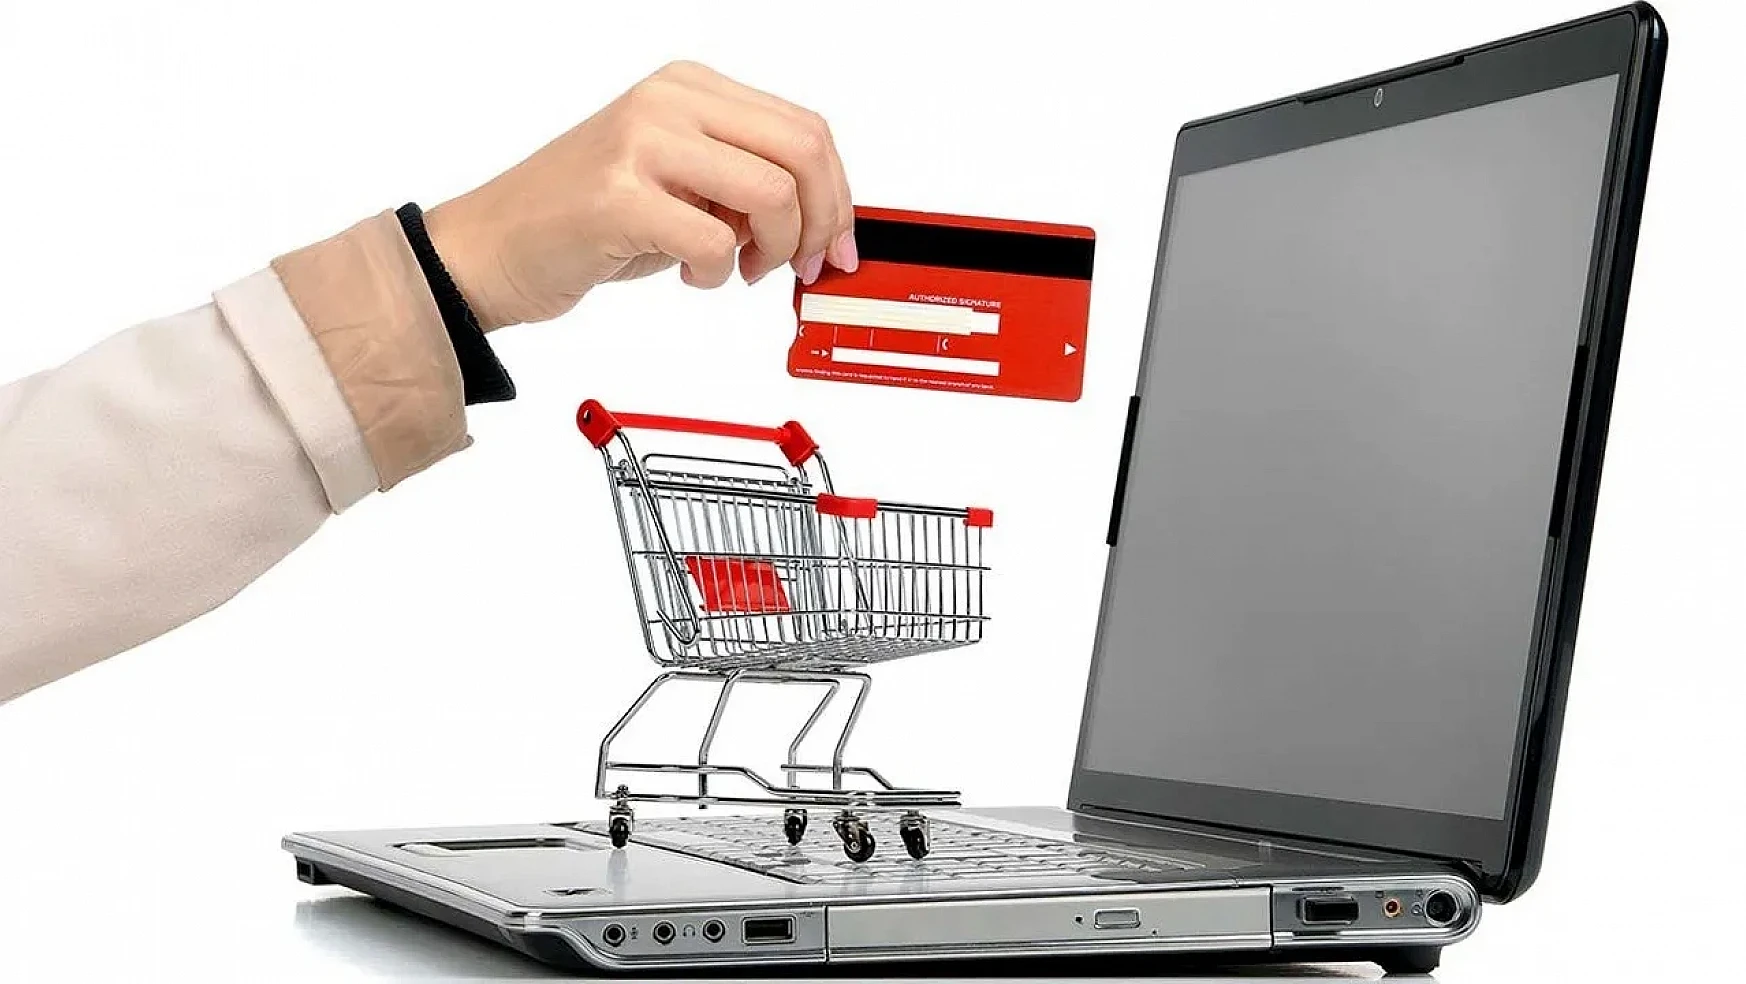 İnternet Alışverişi: İnternet Üzerinden Alışveriş Yapmak Artık Tehlikeli mi? İnternet Üzerinden Alışveriş Yapmanın Riskleri!